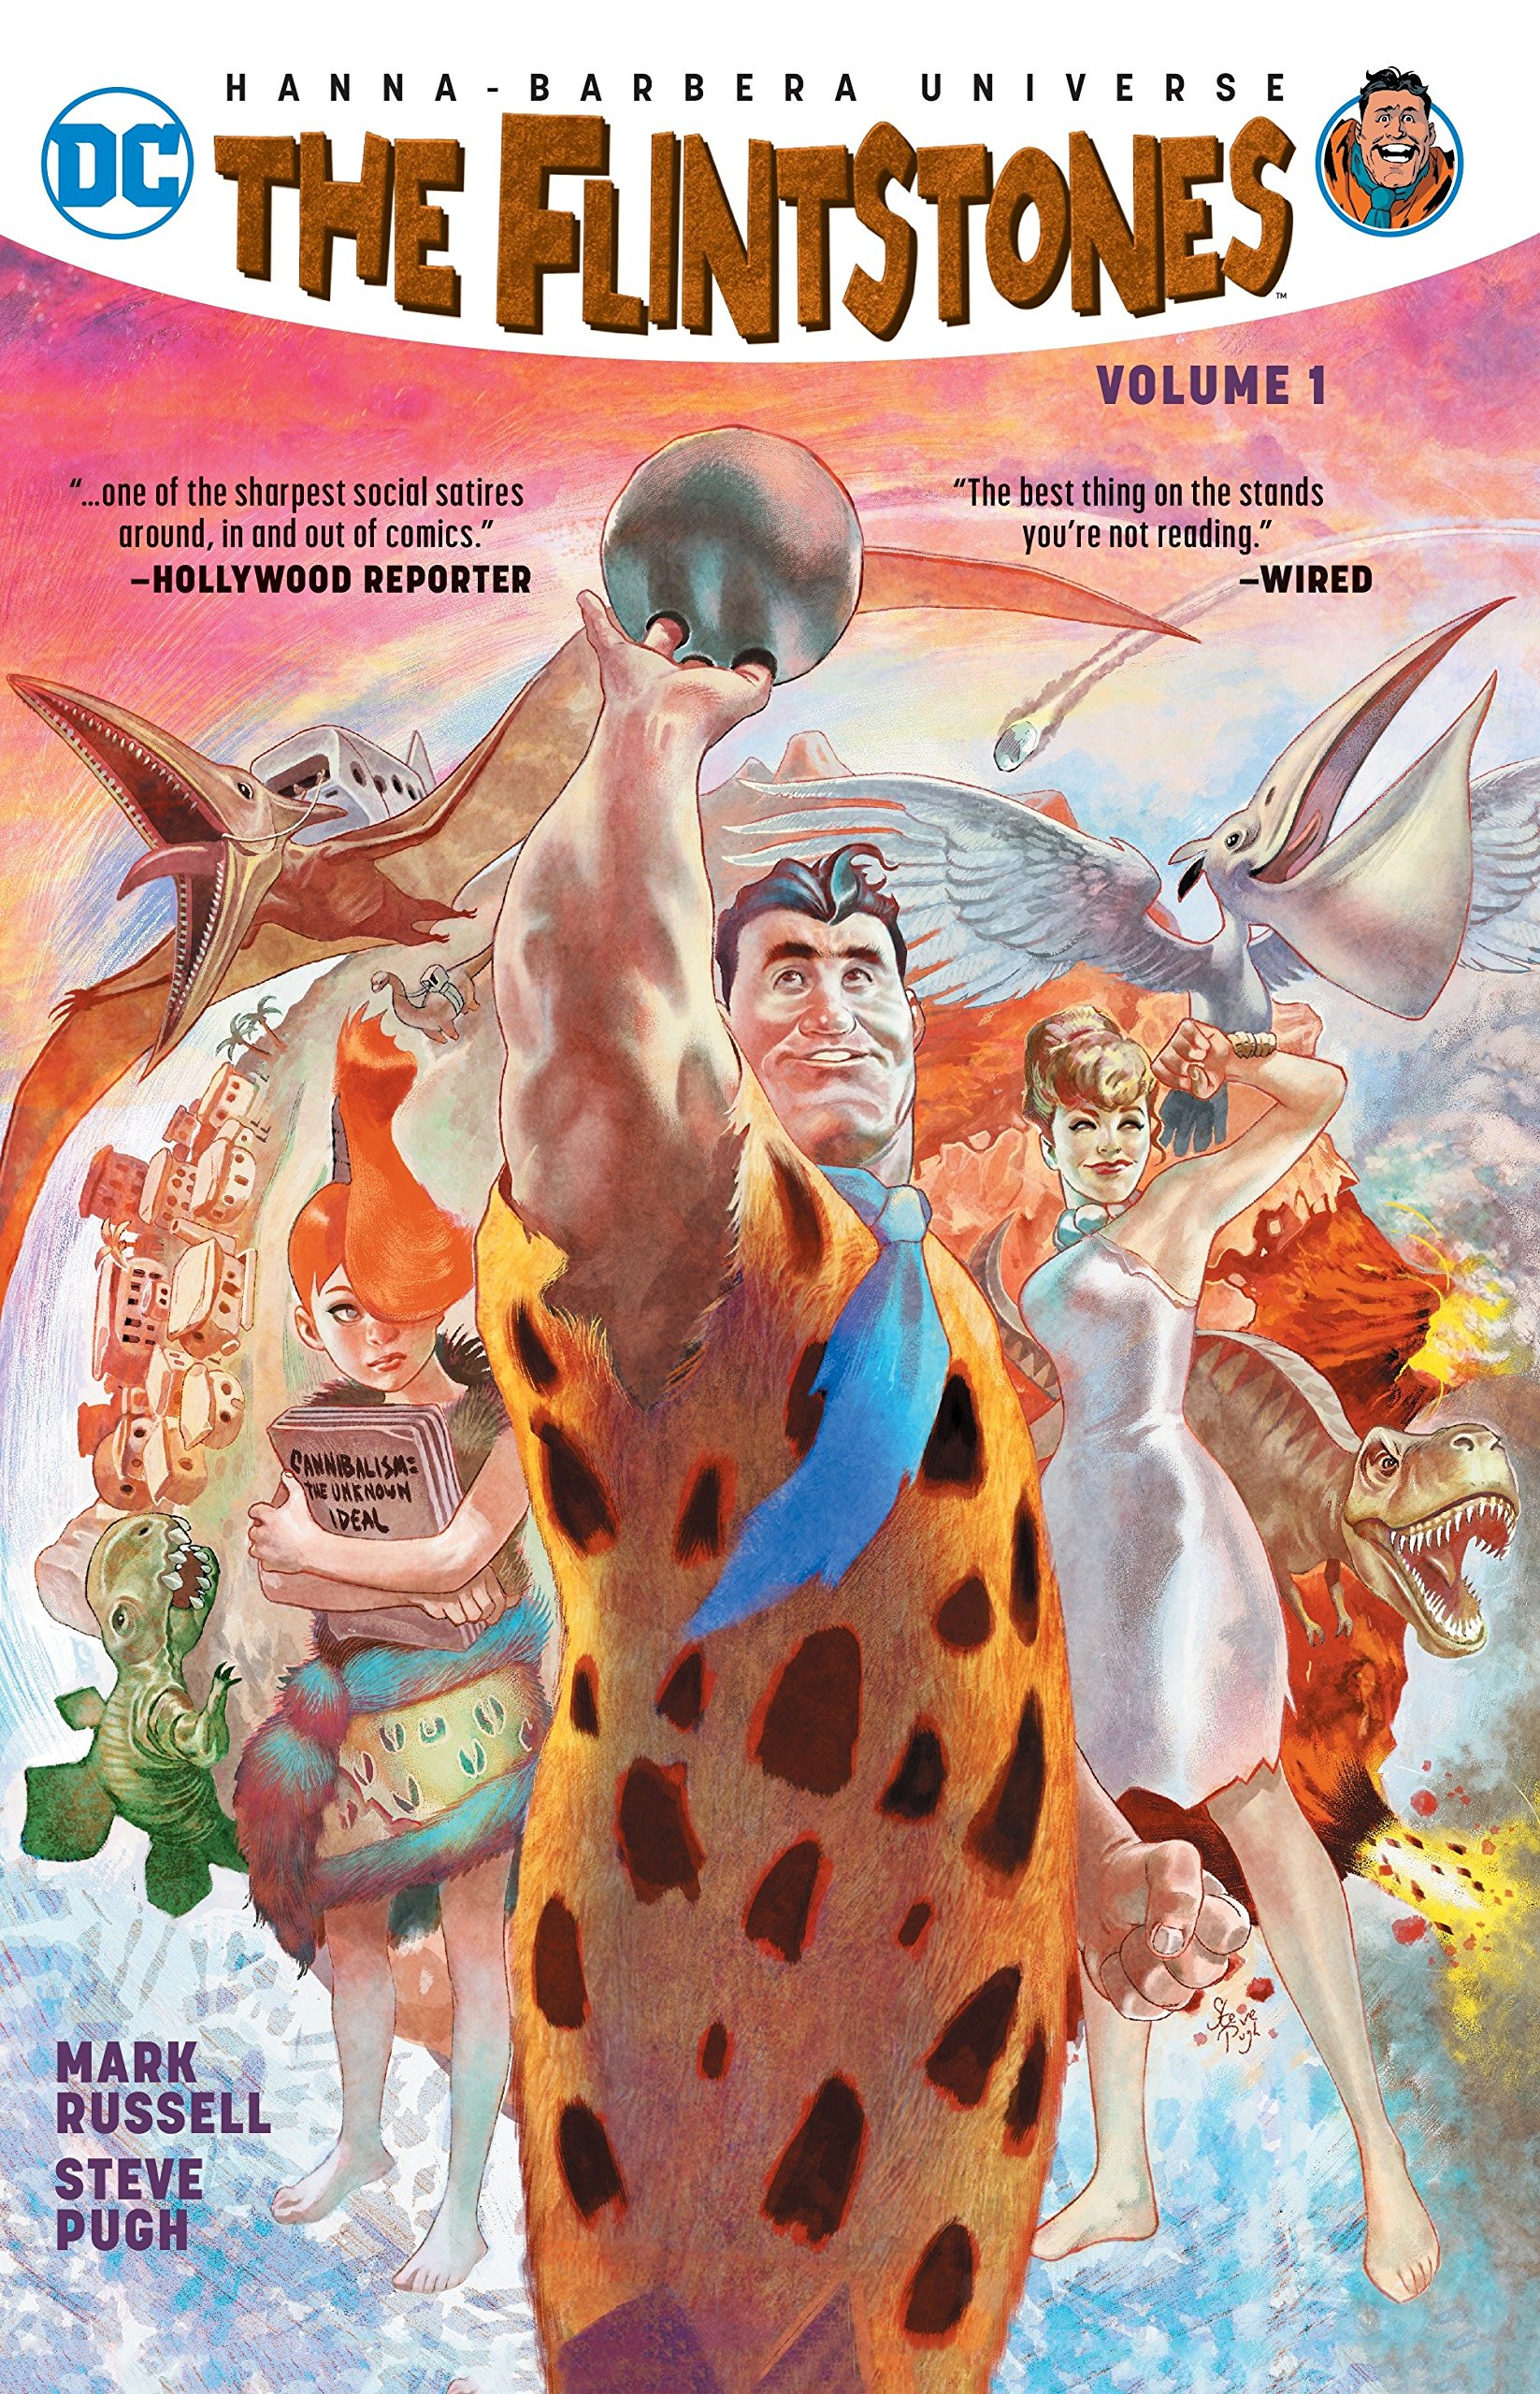 Flintstones Graphic Novel Volume 1